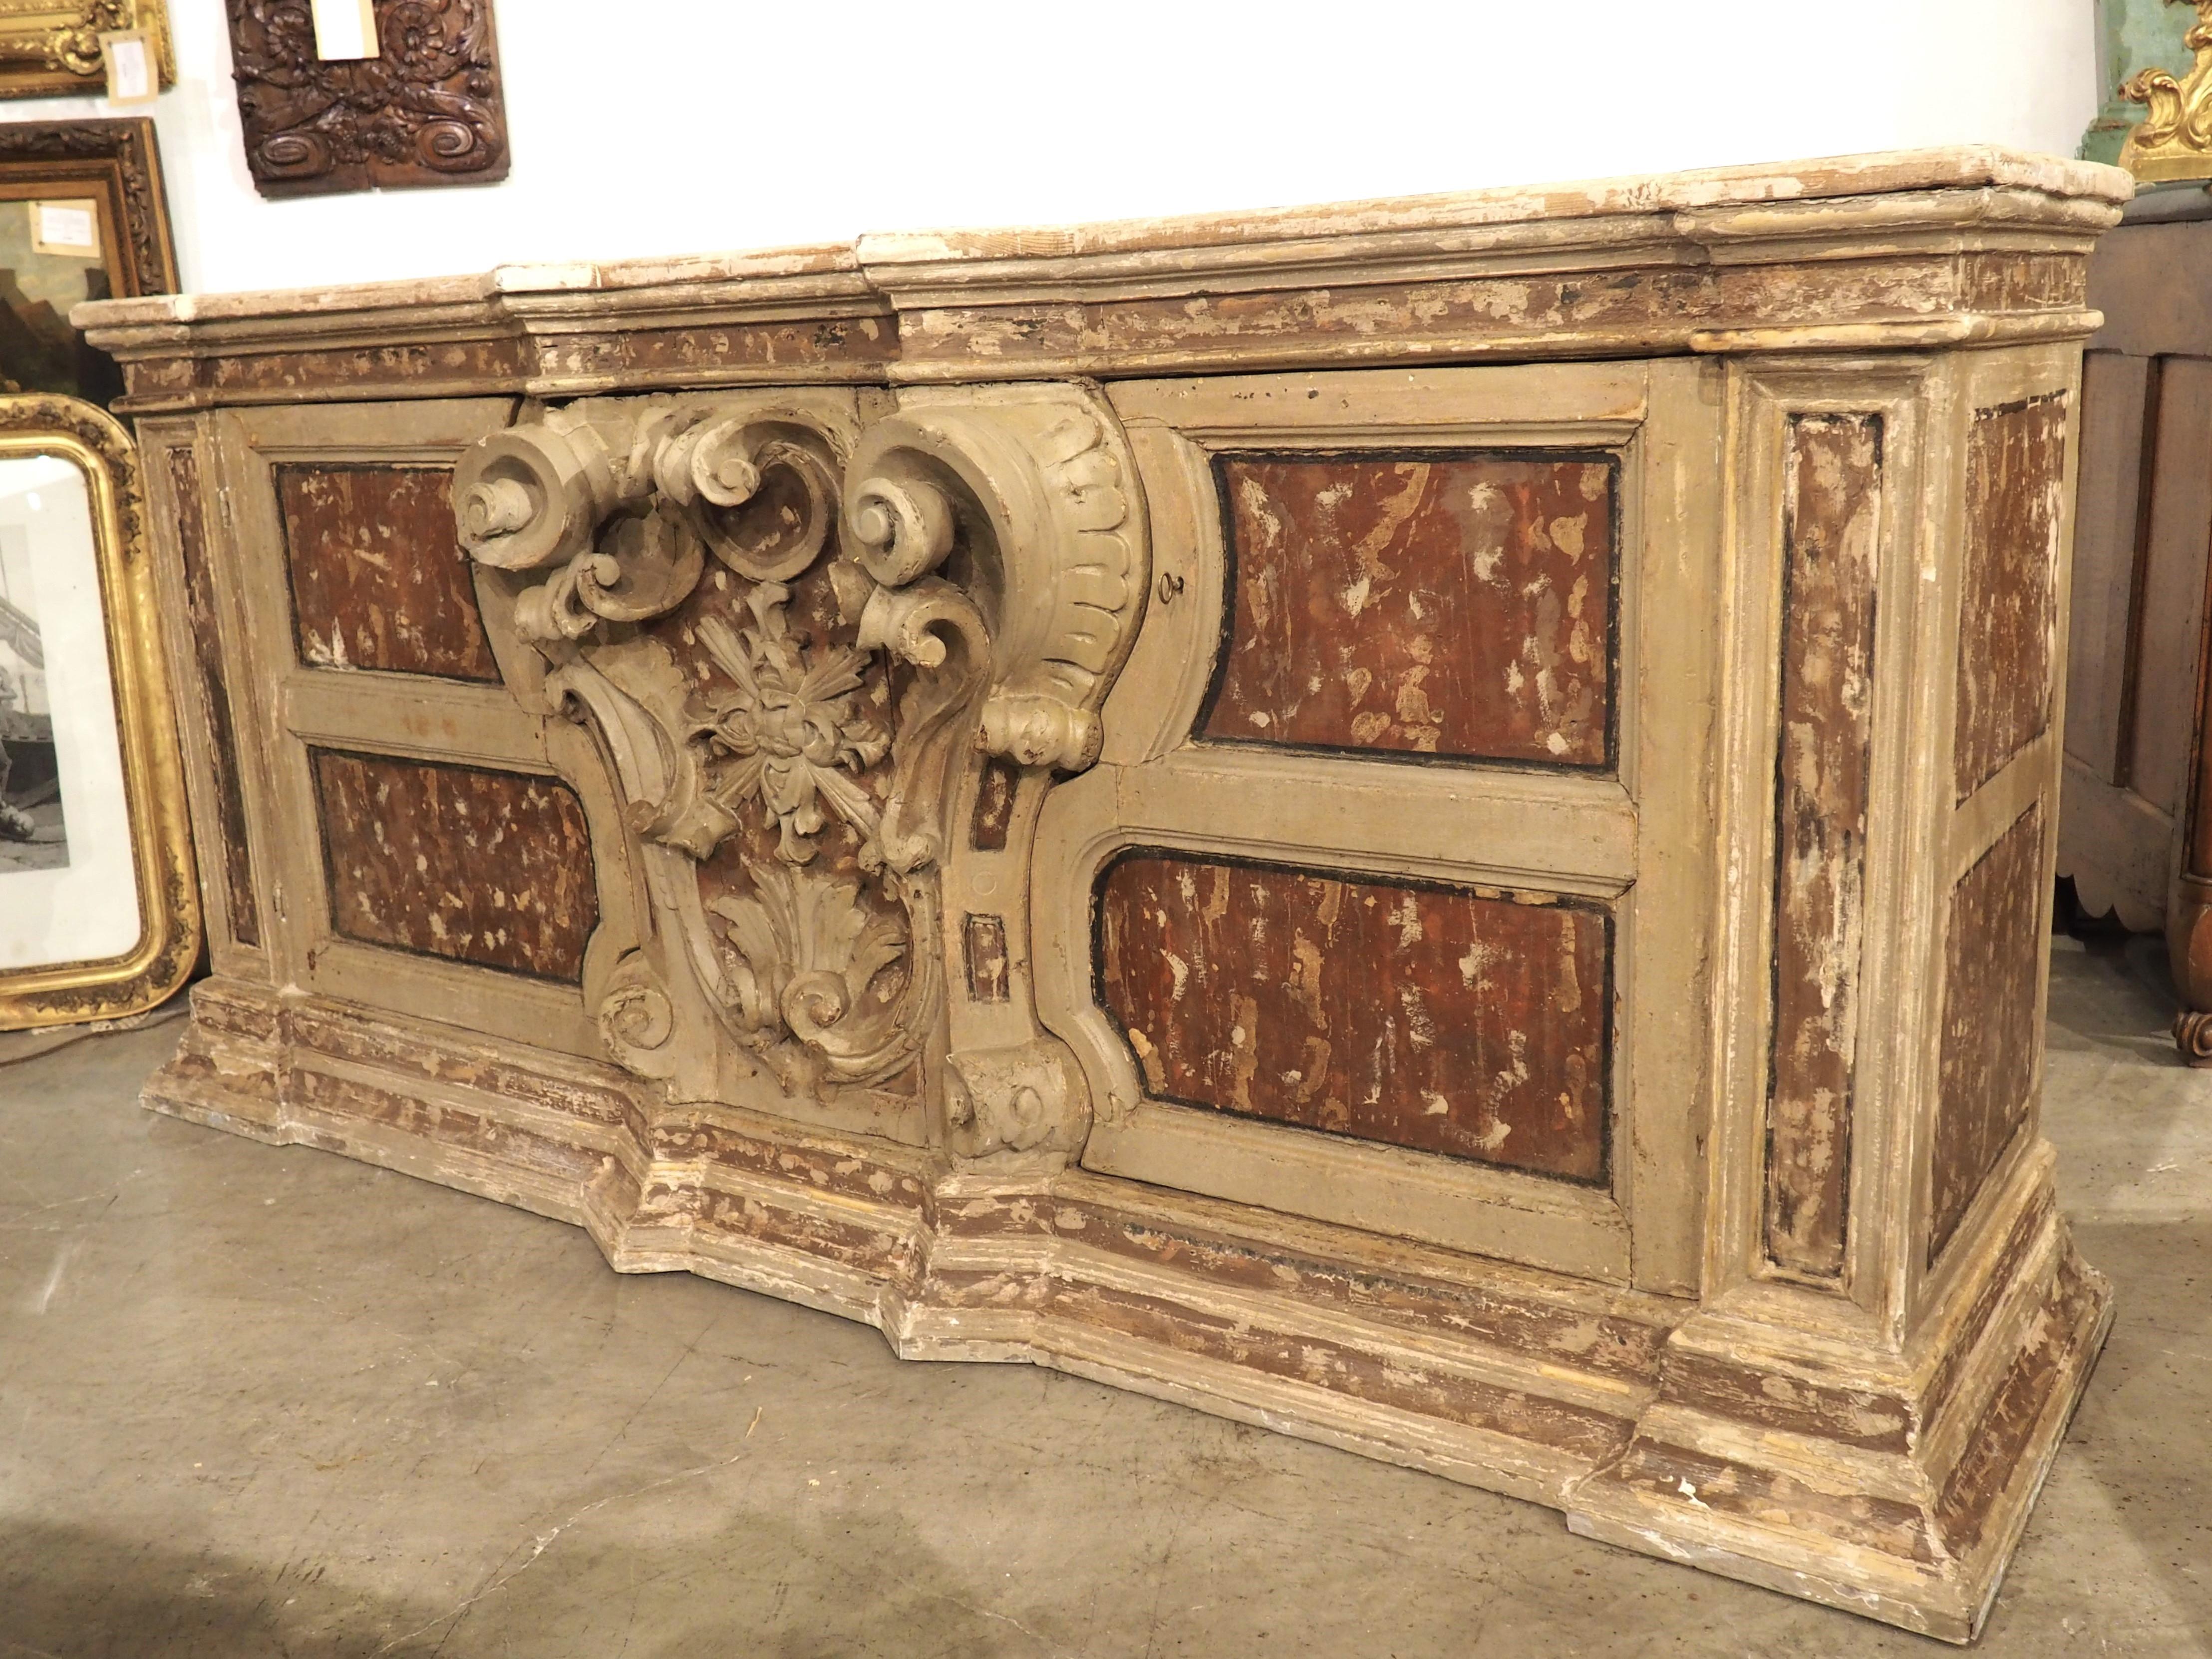 Die zentrale Kartusche dieser Kredenz stammt aus der Zeit um 1700 und stammt ursprünglich von einem Altar in Neapel, Italien. Die Kartusche ist eine fantastische Reliefschnitzerei einer stark verschnörkelten Konsole mit einem Blattmedaillon, das von